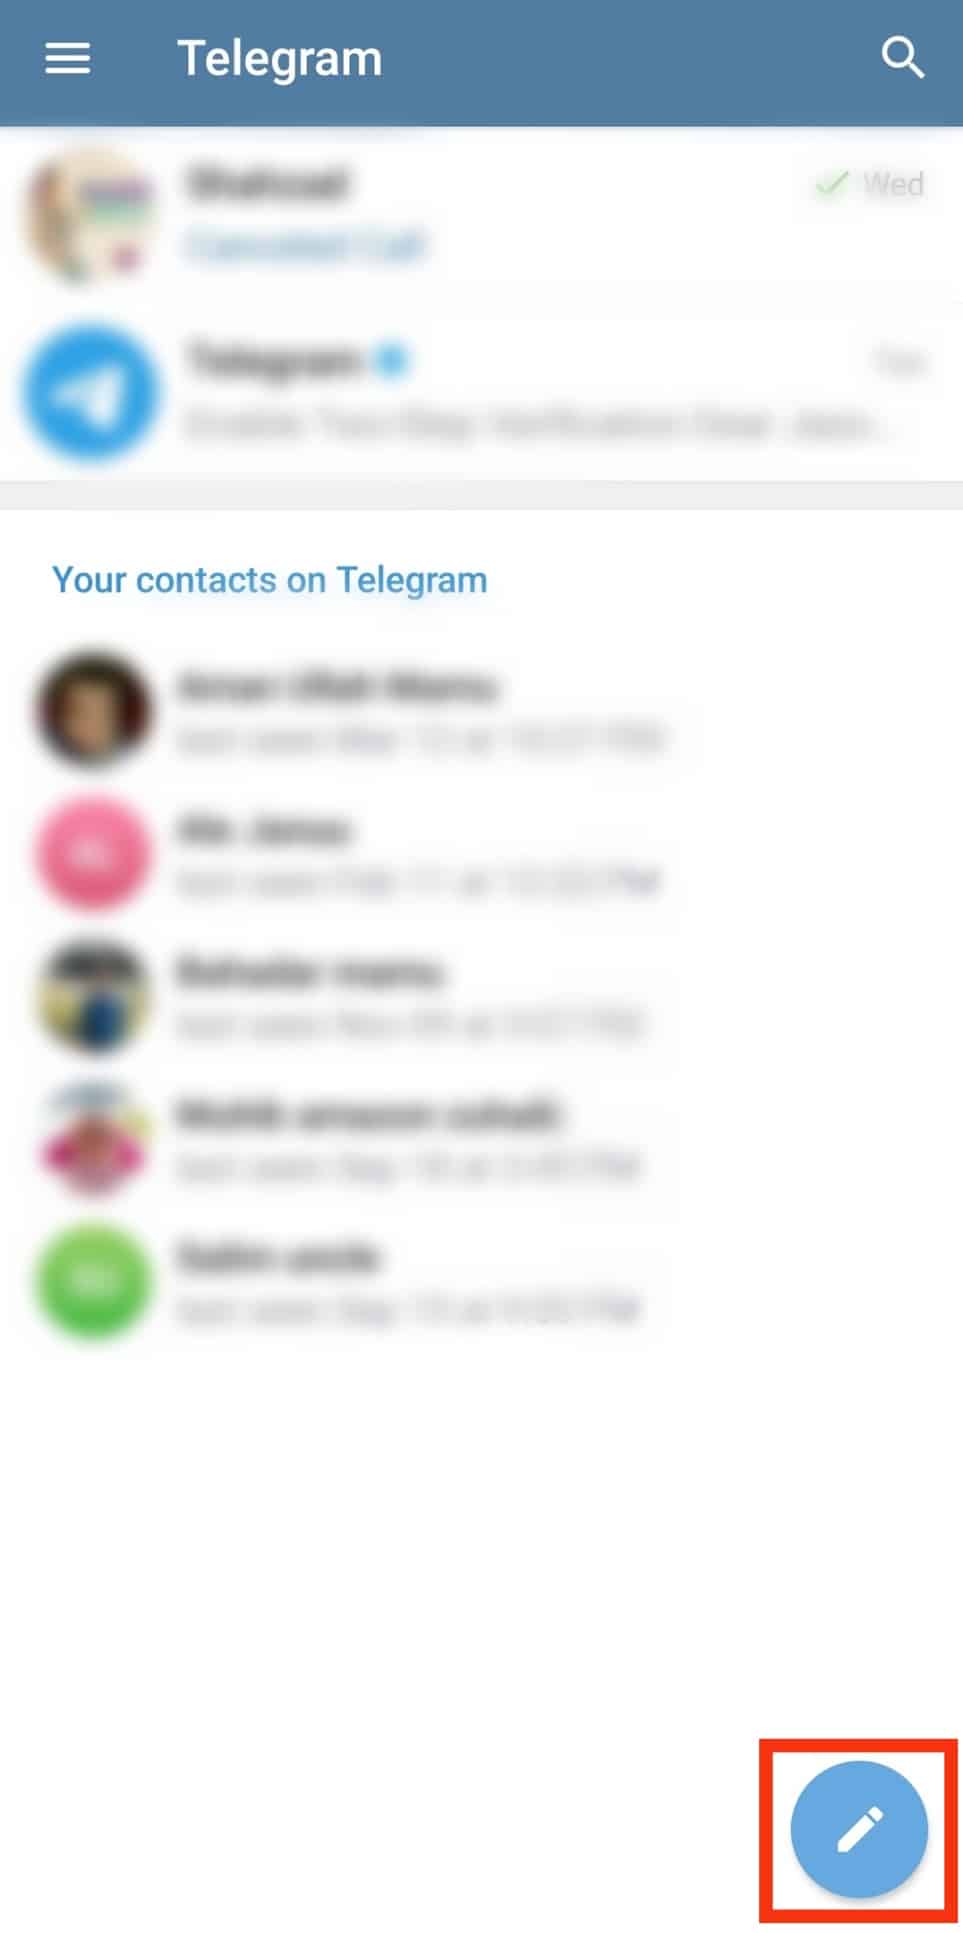 Cómo seguir a alguien en Telegram?